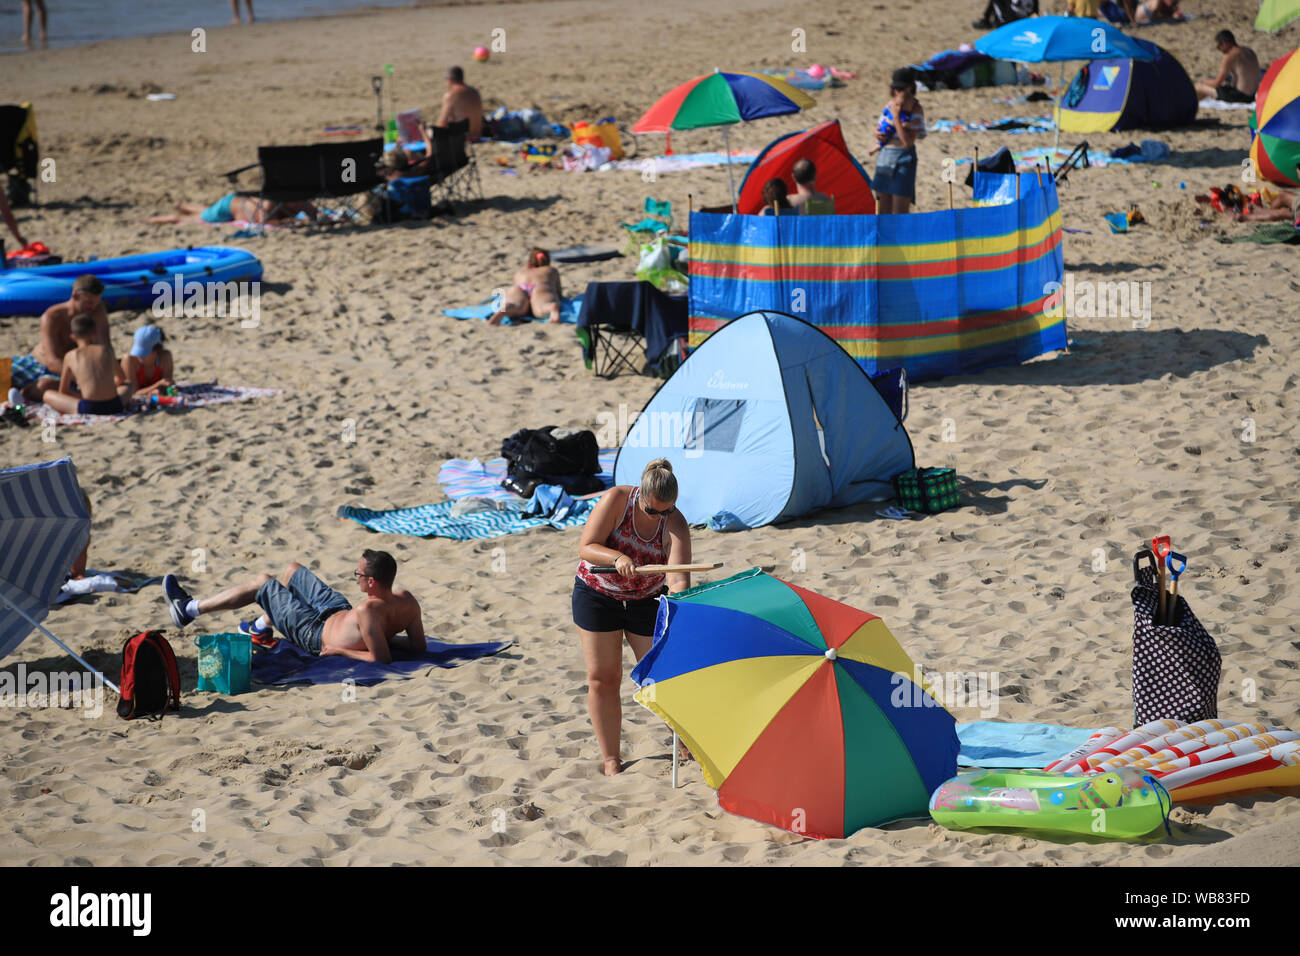 La gente sulla spiaggia di Bournemouth godetevi il sole che è impostata su continua per tutto il fine settimana lungo, anche con le temperature più calde previsto ed eventualmente raggiungere un record di 33C, più probabilmente nel sud-est dell'Inghilterra, il lunedì. Foto Stock